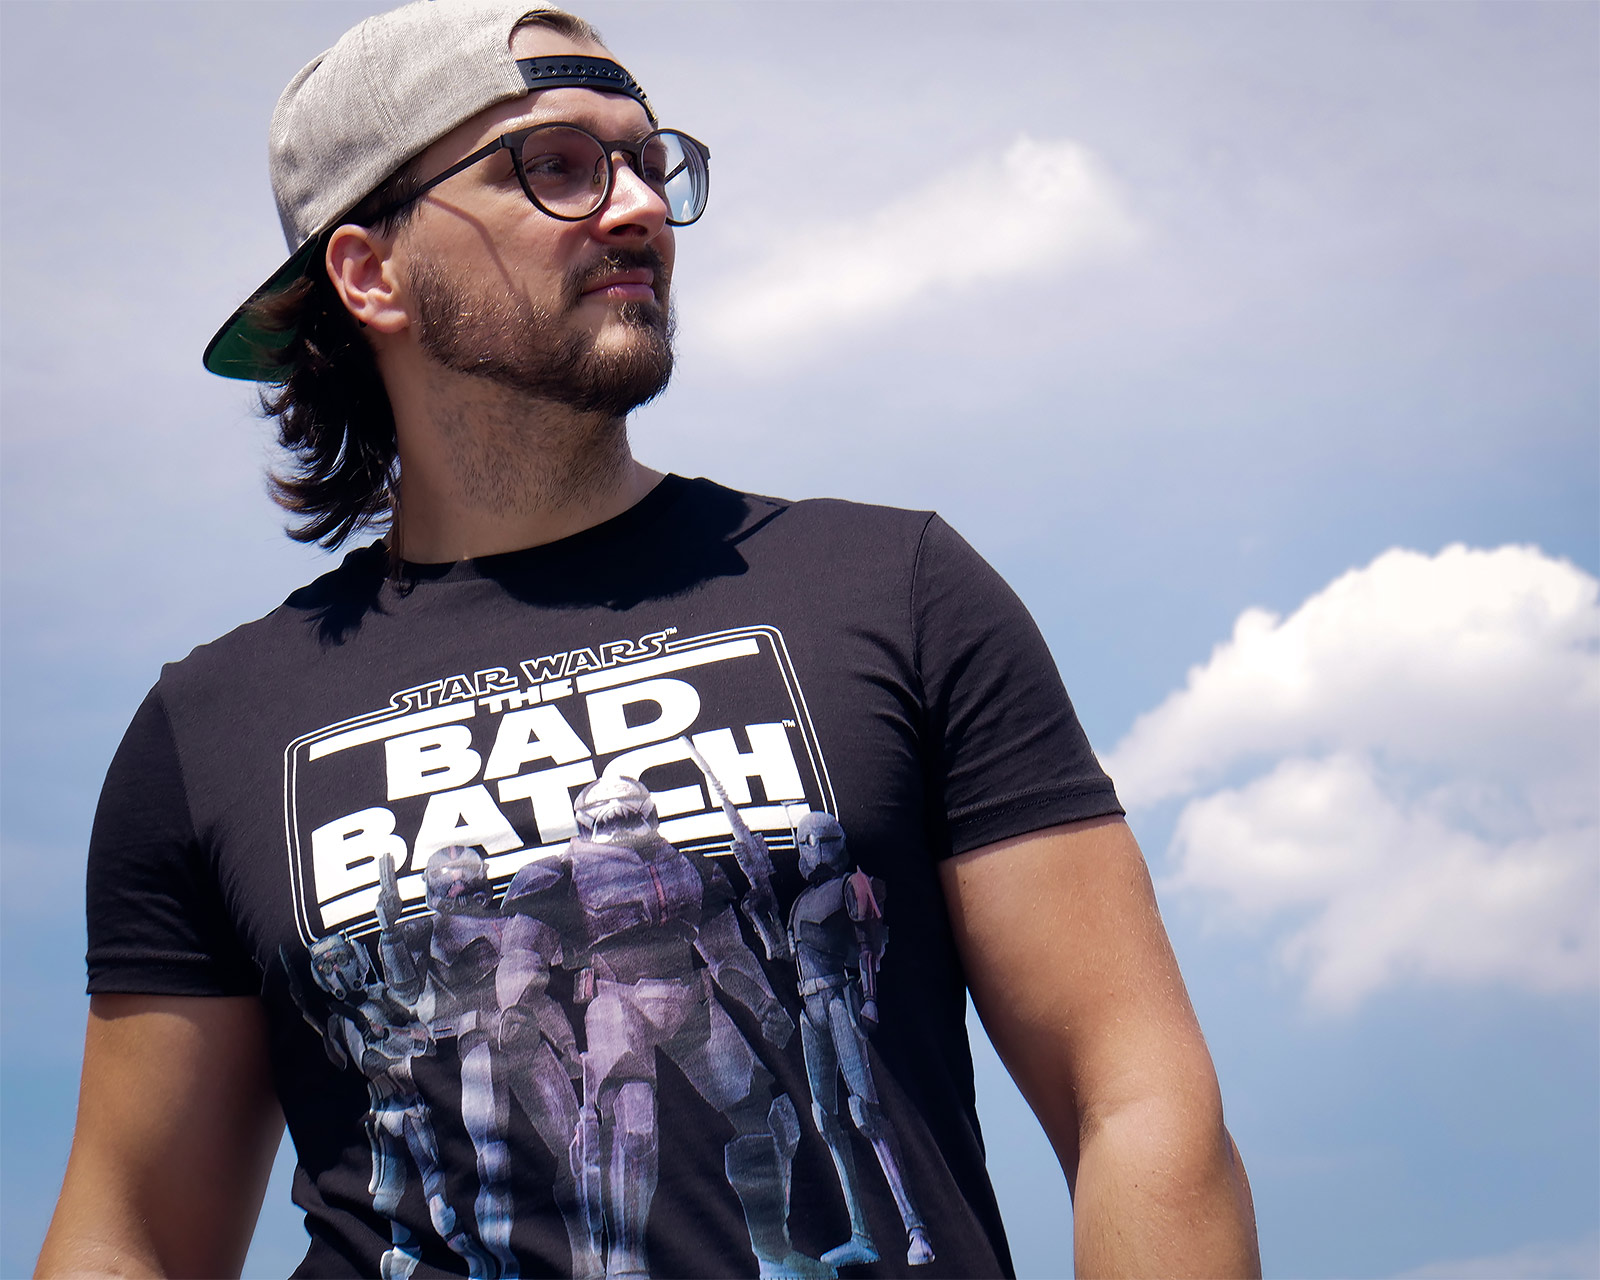 Star Wars - Bad Batch Groep T-shirt zwart